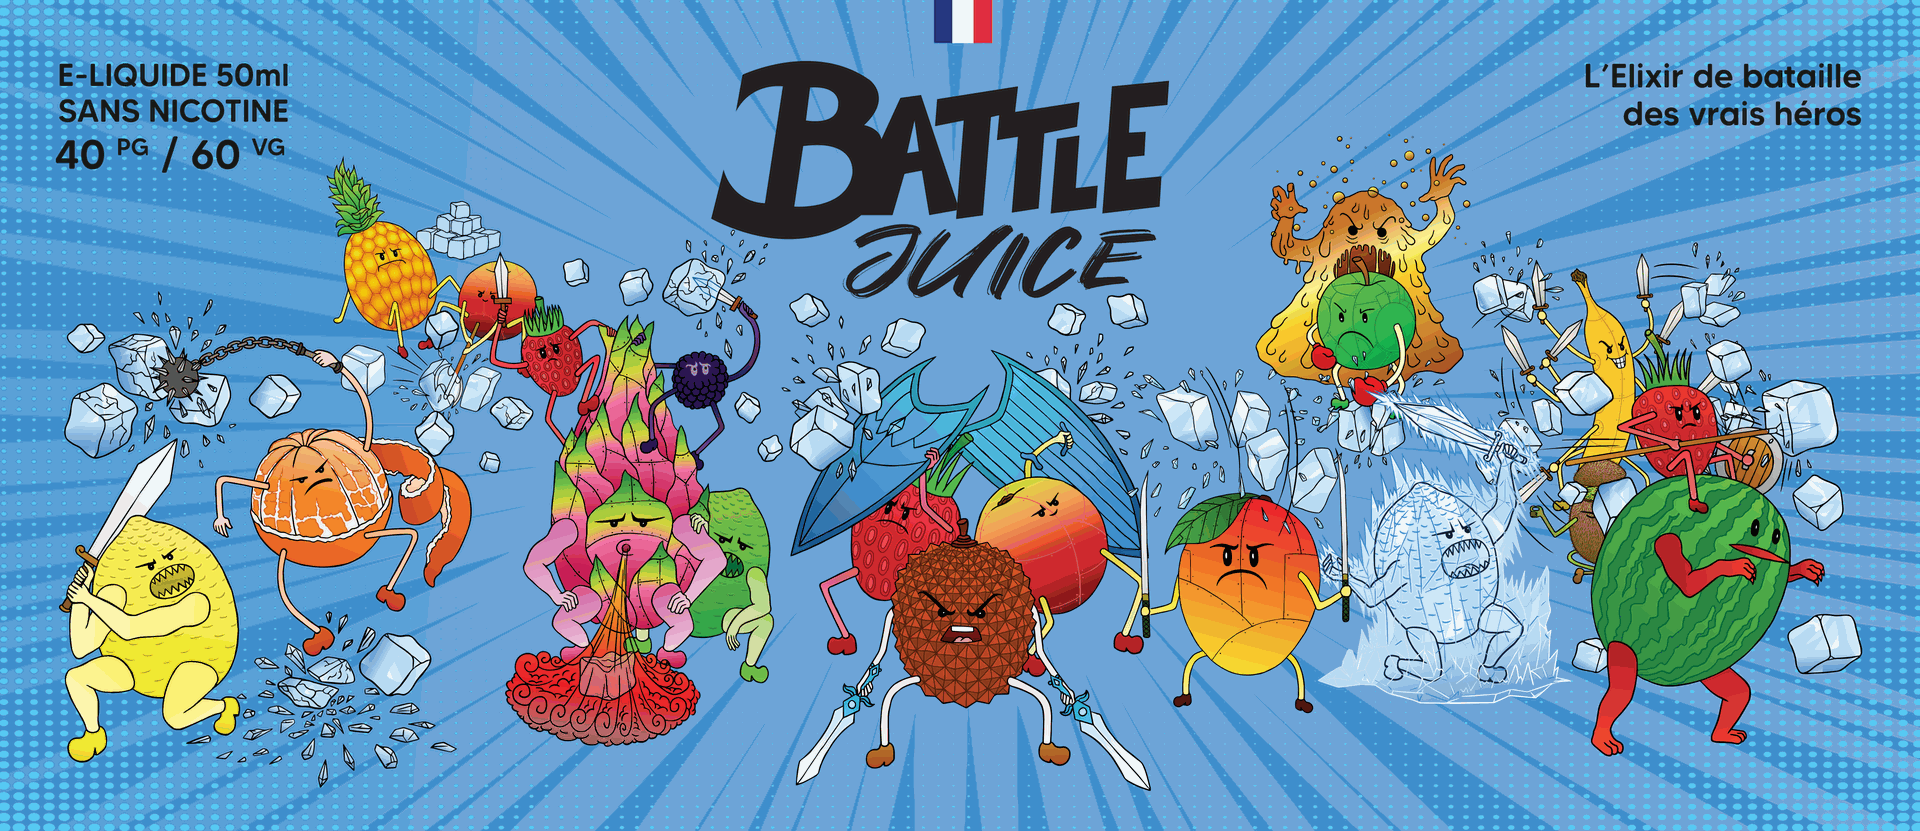 Eliquide Battle Juice par Bobble